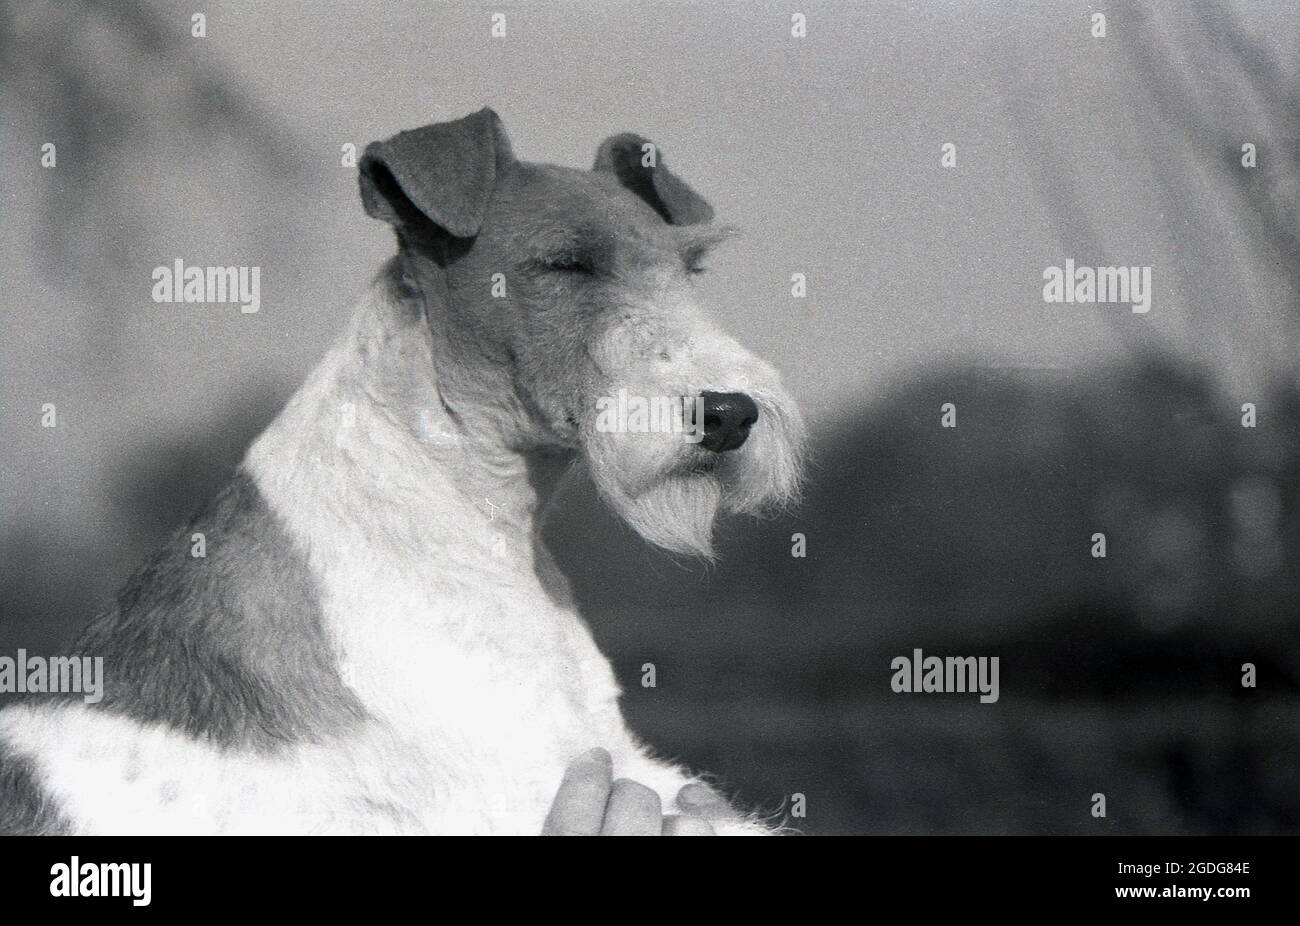 1955, historisch, Porträt eines preisgekrönten Showhundes, eines Wire Fox Terrier, England, Großbritannien. Mit seinem markanten Aussehen, seinem drahtig Mantel und seinen ausdrucksstarken Eigenschaften war der Wire in der Vergangenheit ein erfolgreicher Showhund und eine beliebte Präsenz in Filmen und Fernsehen. Als freundlicher, aufkommender und furchtloser Hund in England wurden Wire und Smooth Fox Terrier seit den 1870er Jahren als getrennte Rassen anerkannt, im Gegensatz zu den USA, als sie erst 1985 als eigenständige Rassen anerkannt wurden. Stockfoto